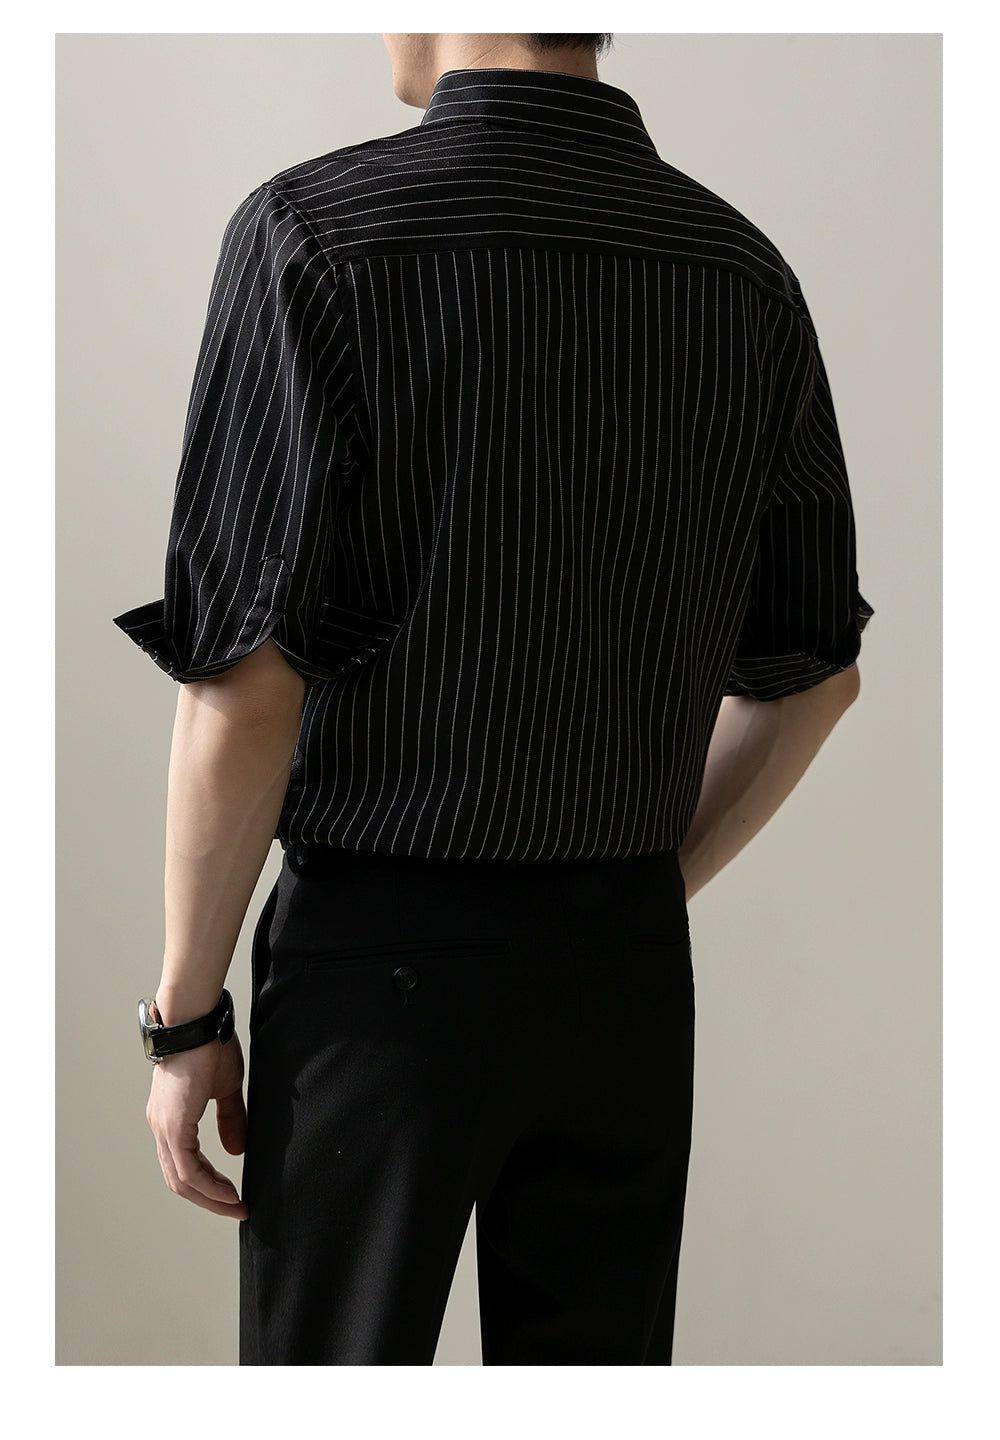 Zhou Folded Sleeve Striped Shirt-korean-fashion-Shirt-Zhou's Closet-OH Garments